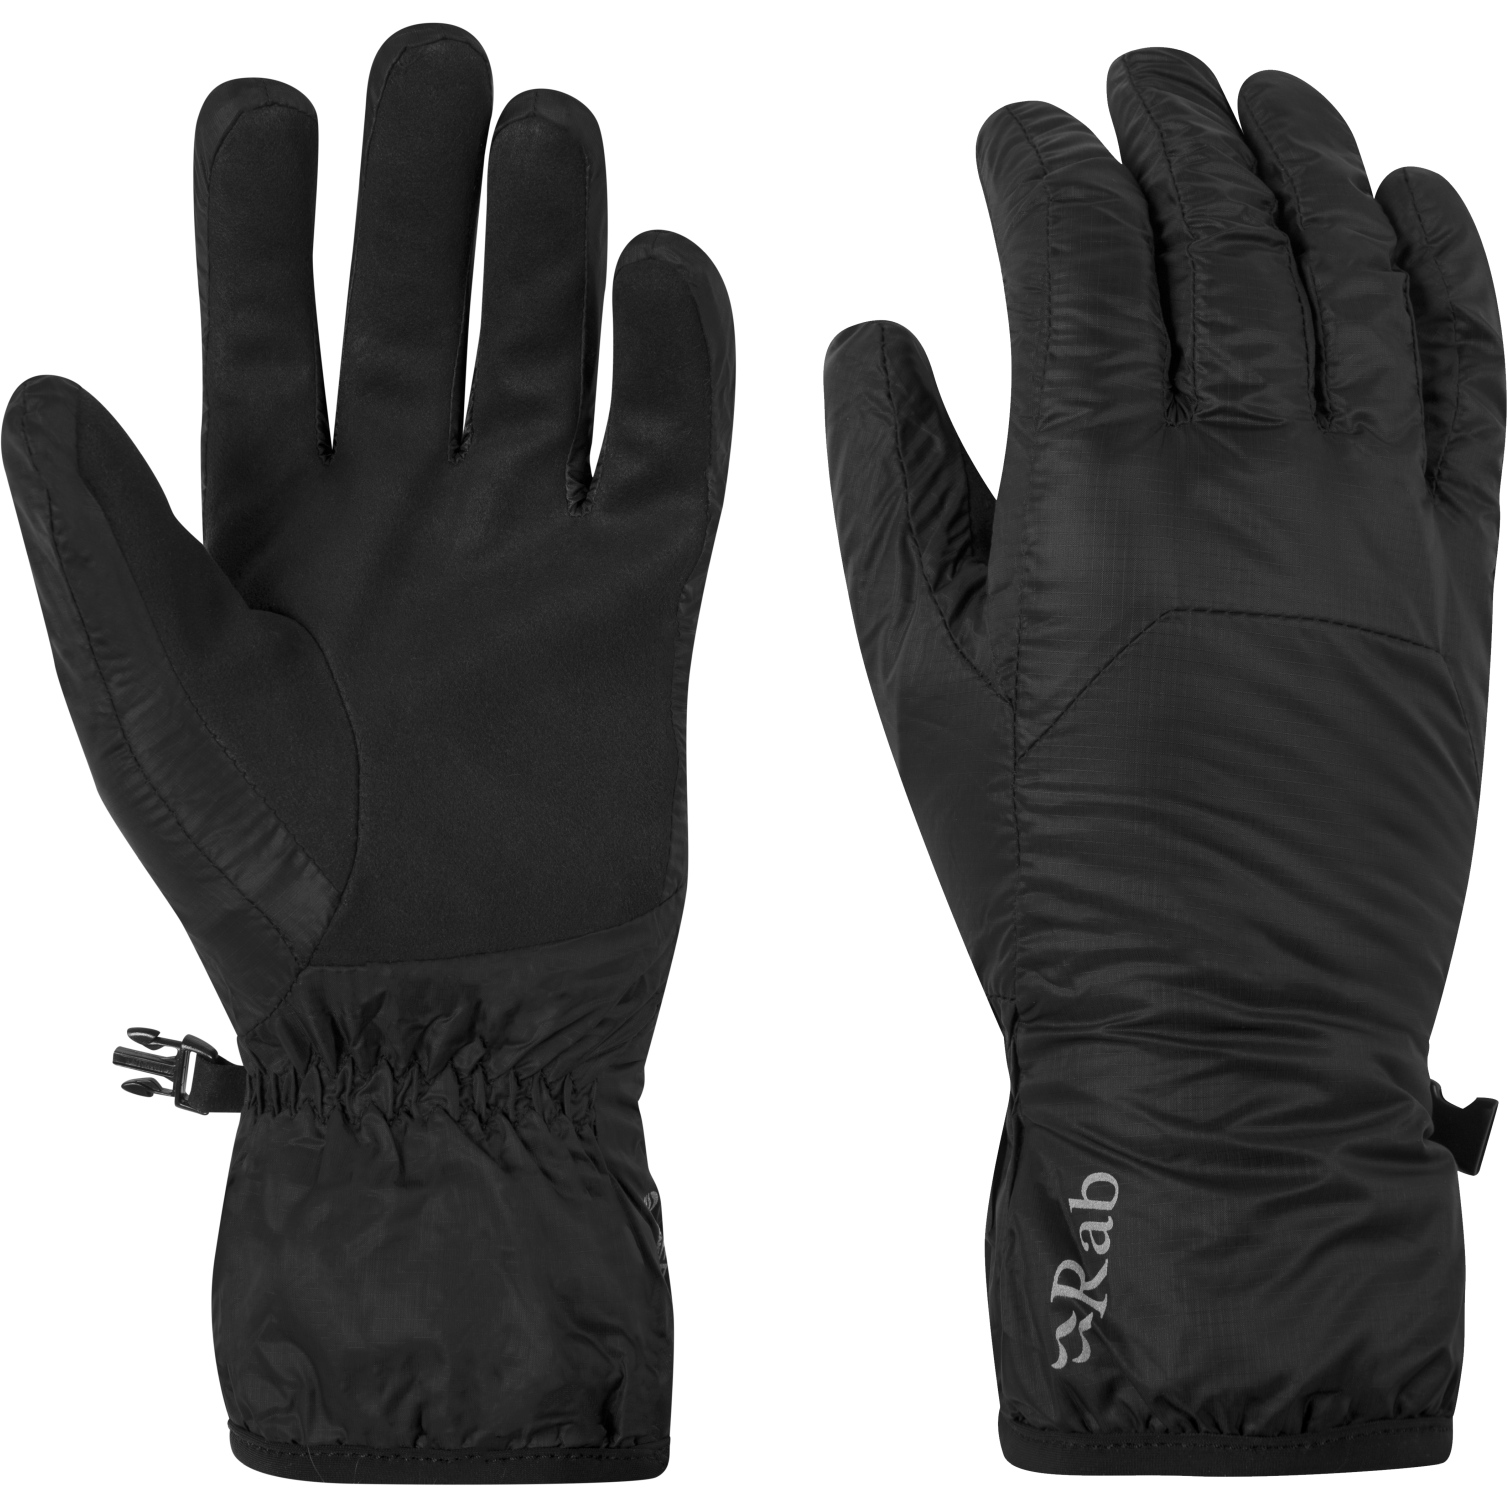 Productfoto van Rab Xenon Handschoenen - zwart